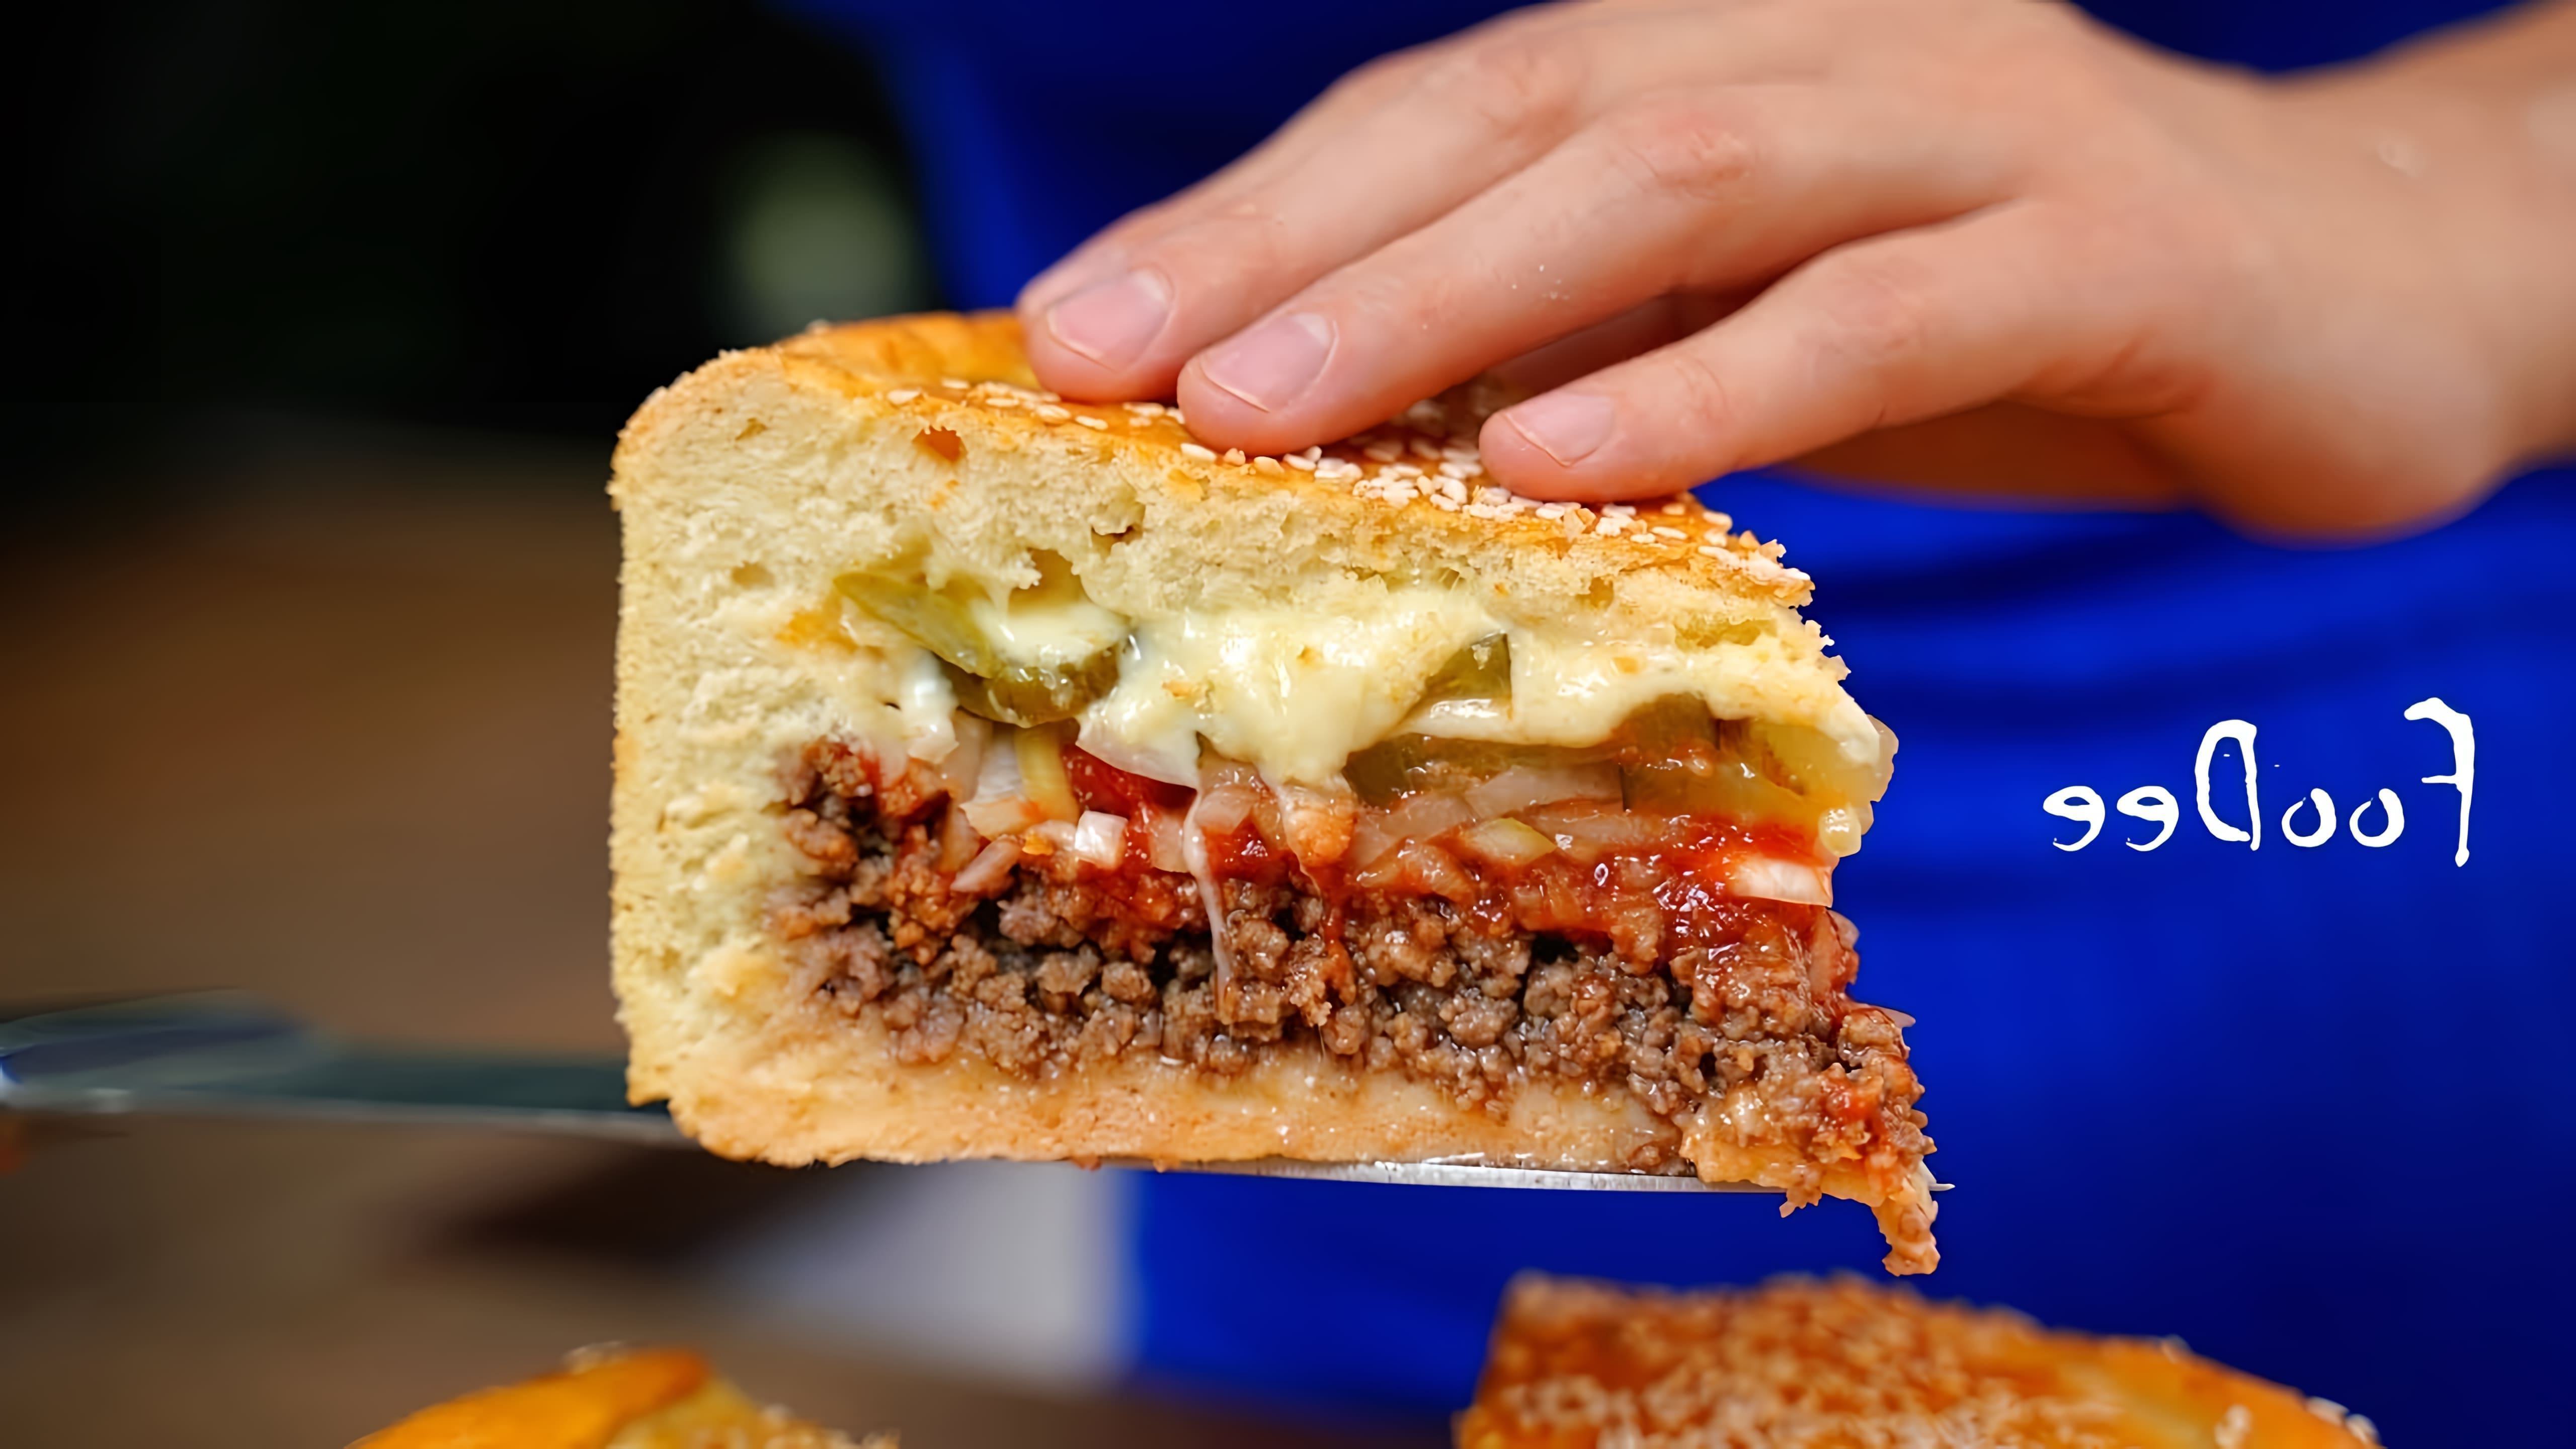 В этом видео демонстрируется процесс приготовления мясного пирога, который по вкусу напоминает чизбургер